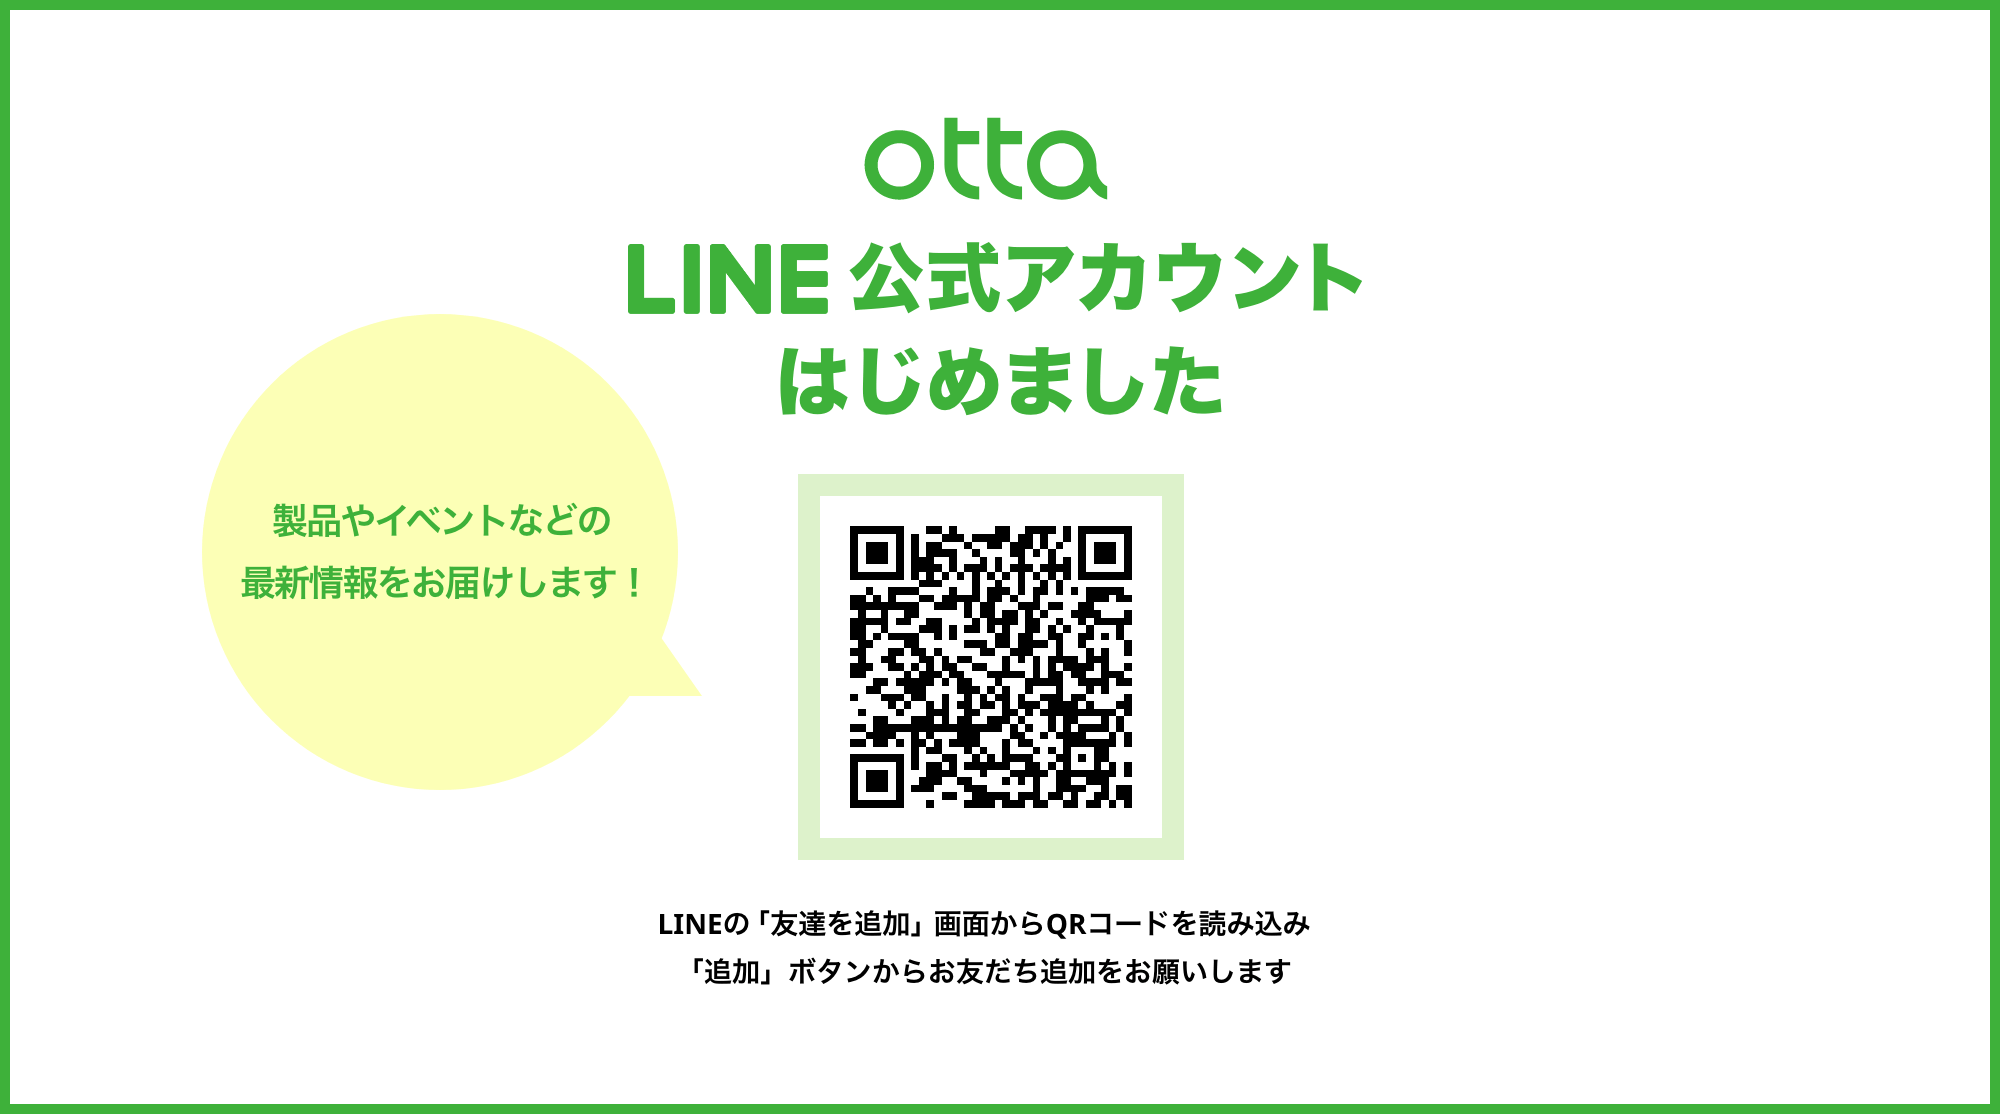 otta LINE公式アカウントはじめました 製品やイベントなどの最新情報をお届けします！